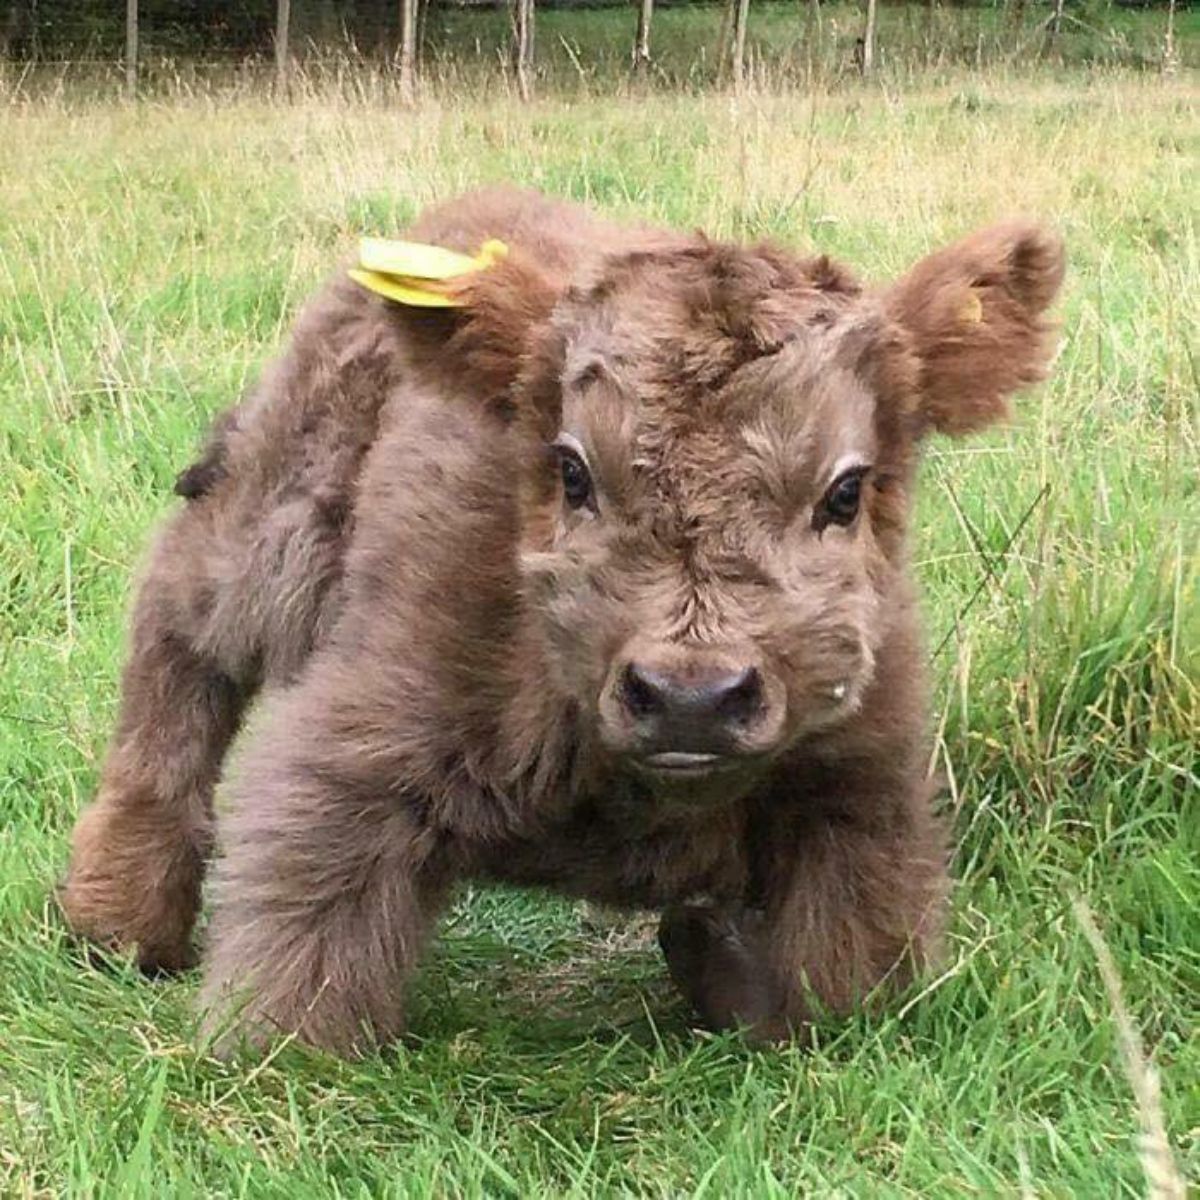 brown calf standing on grass